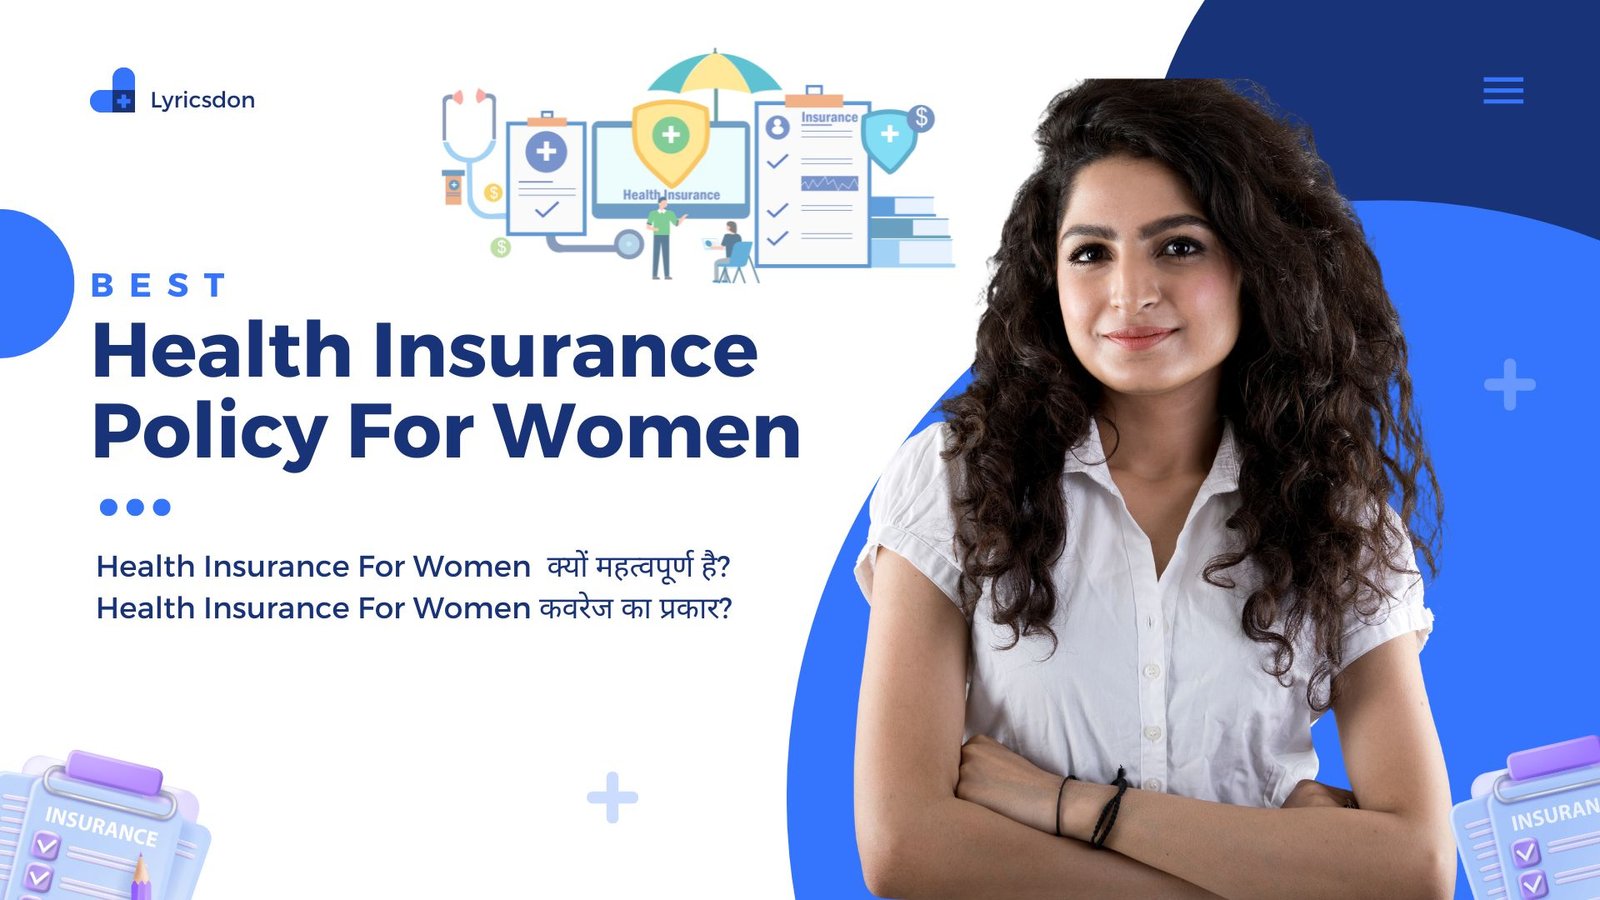 Health Insurance For Women  क्यों महत्वपूर्ण है?